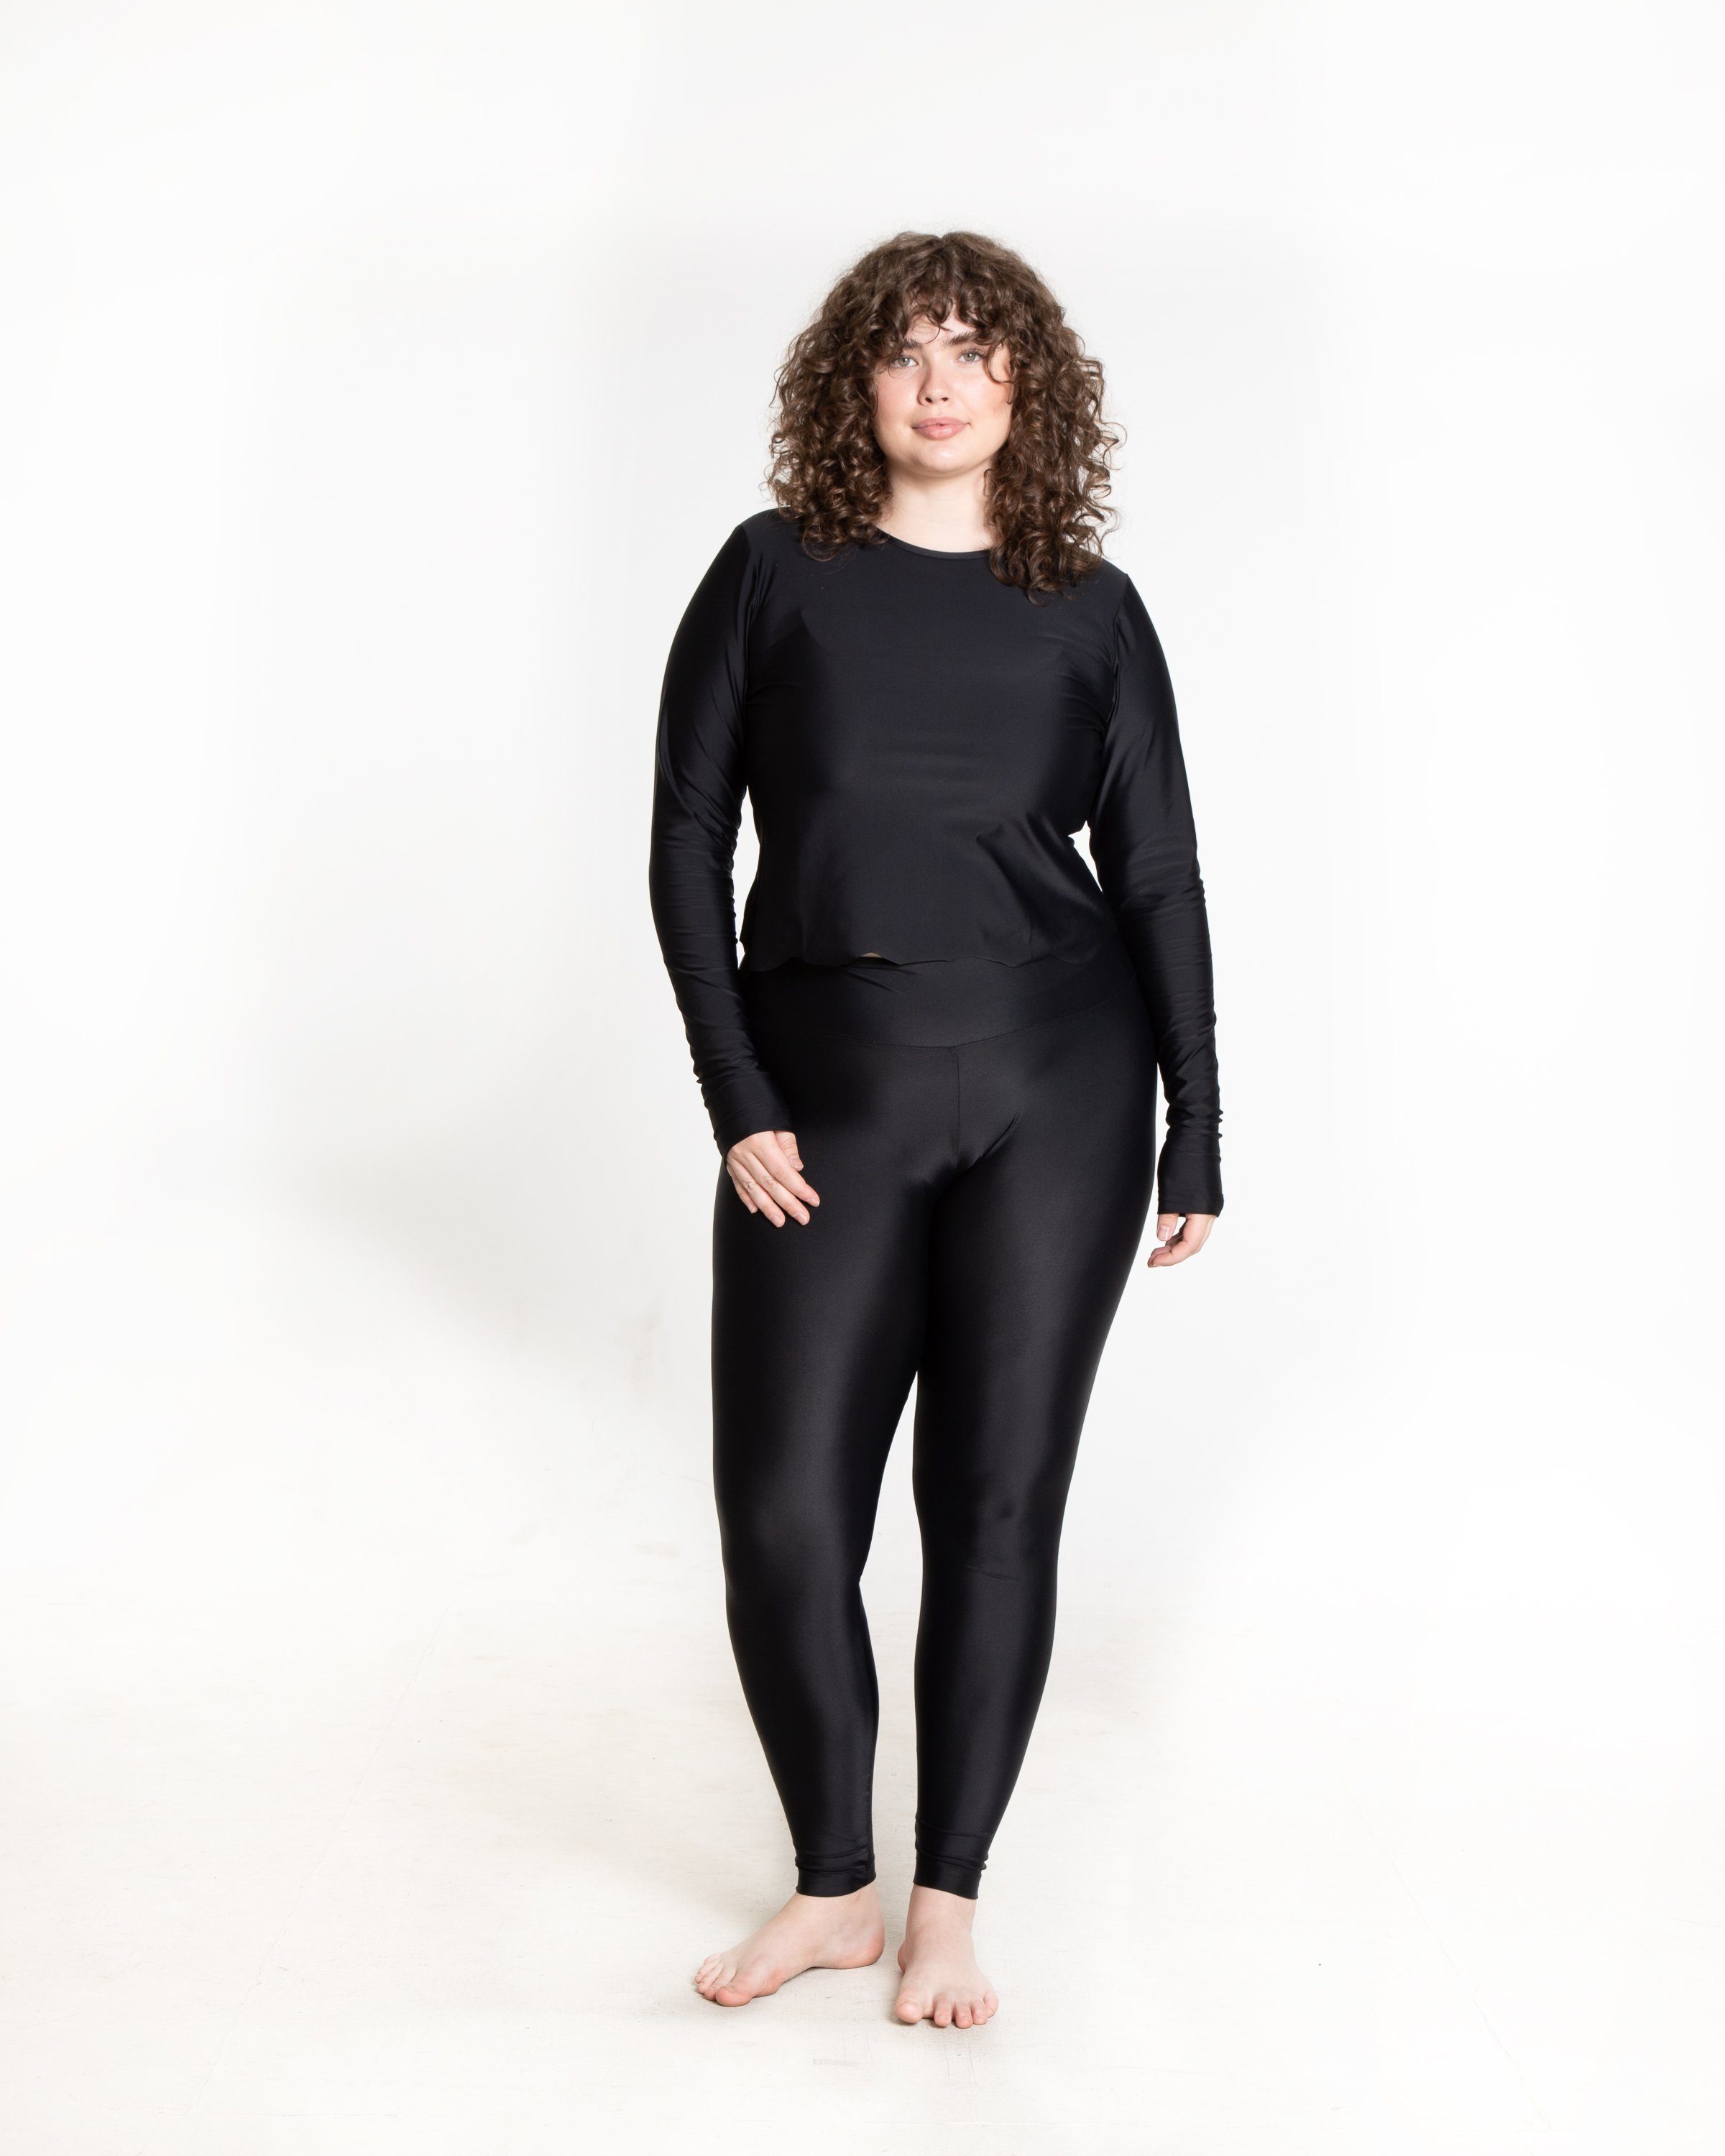 Details more than 238 uv swim leggings best